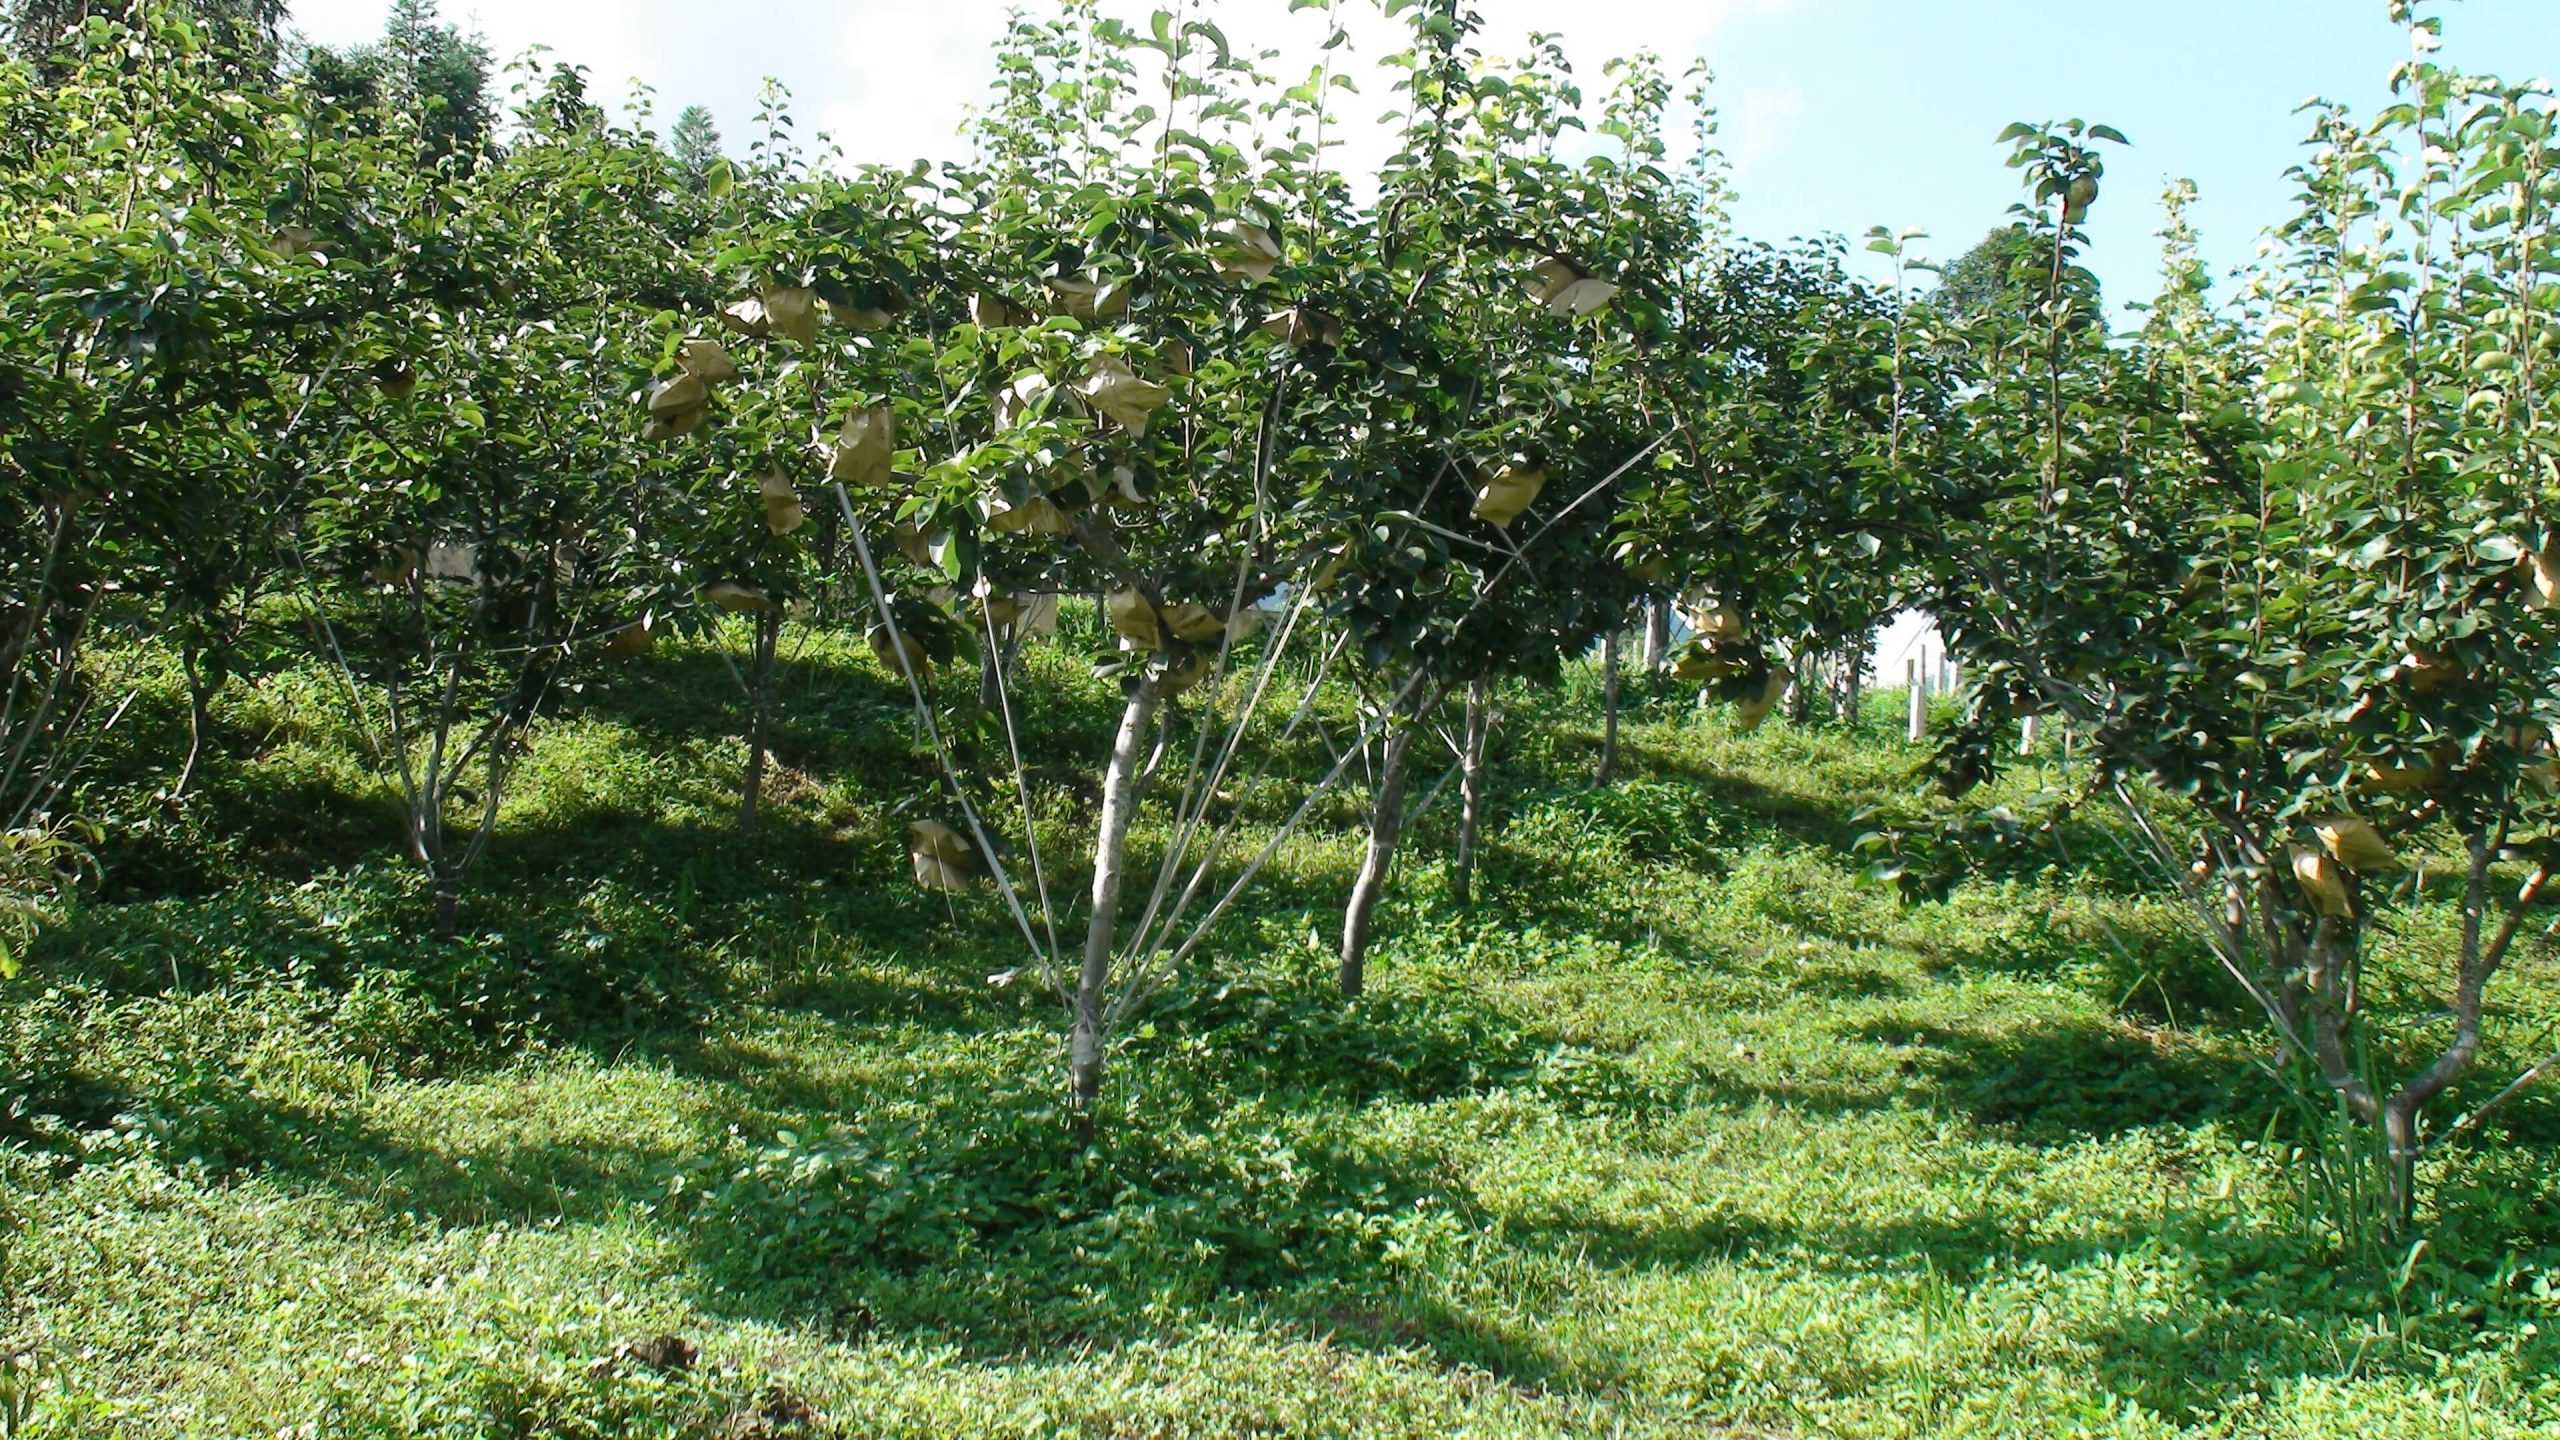 Có được phép chuyển nhượng đất trồng cây ăn quả trong khu vực rừng phòng hộ không?